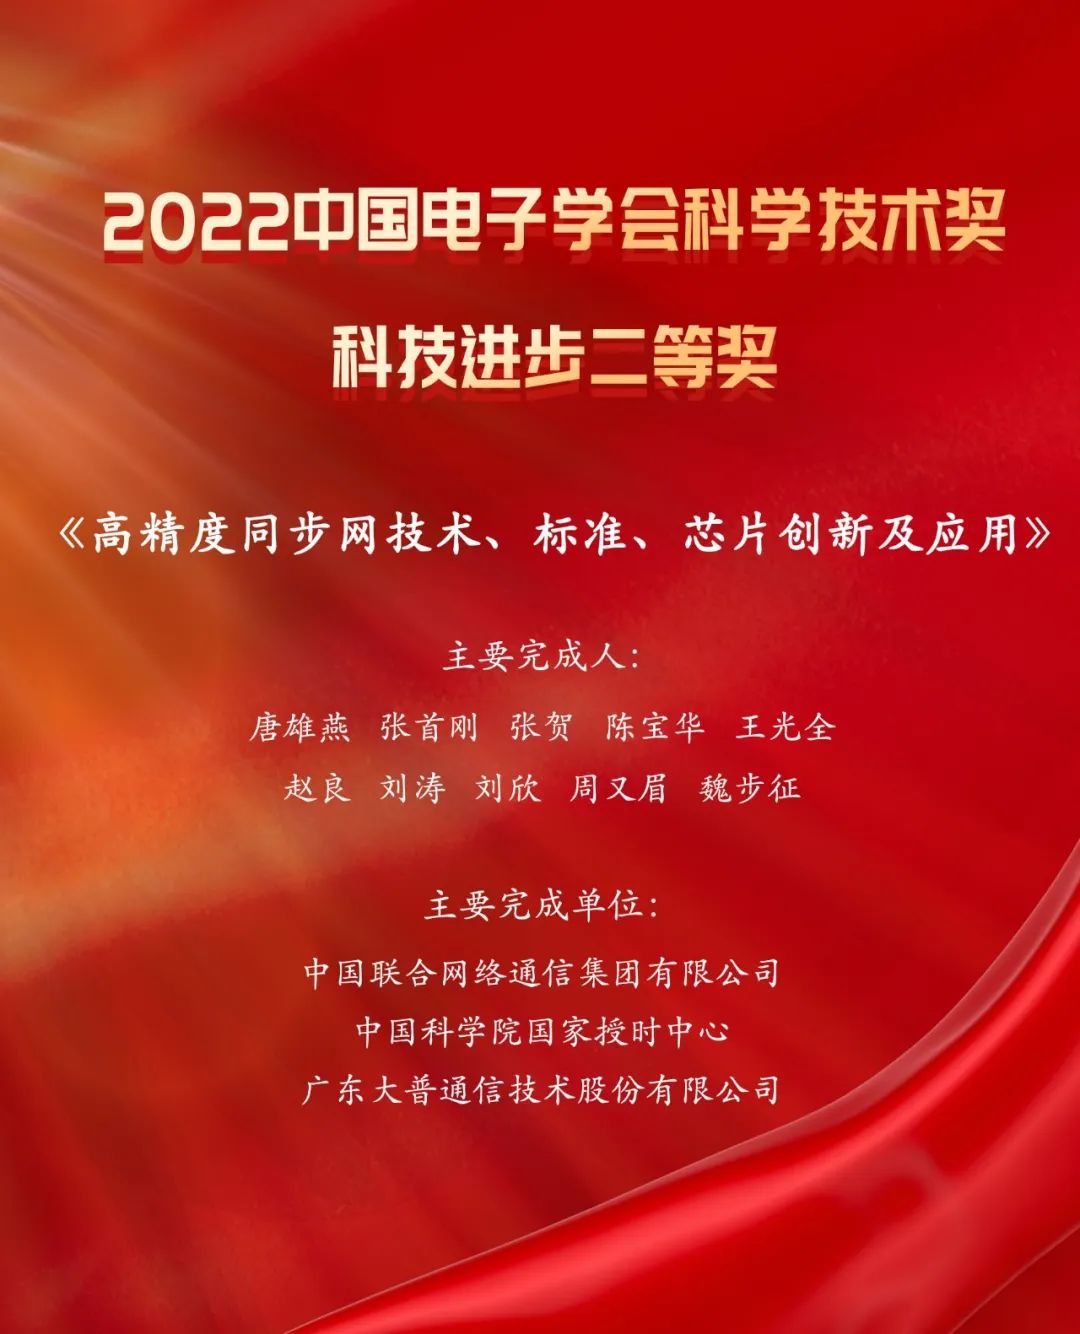  大普通信荣膺2022中国电子学会科学技术奖